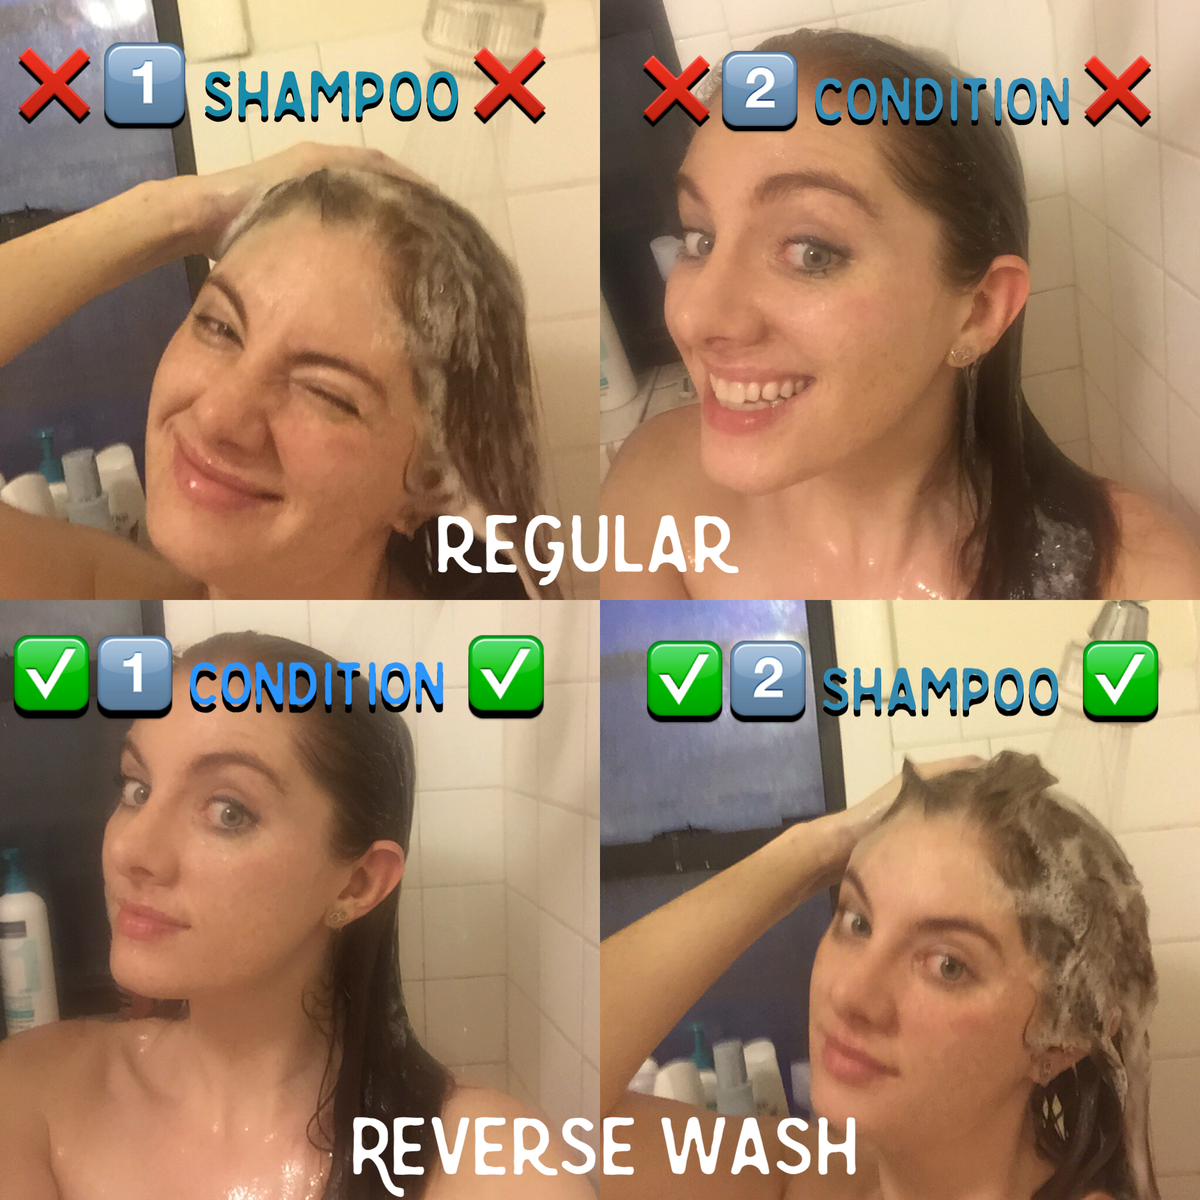 Ali metoda povratnega umivanja las res deluje?